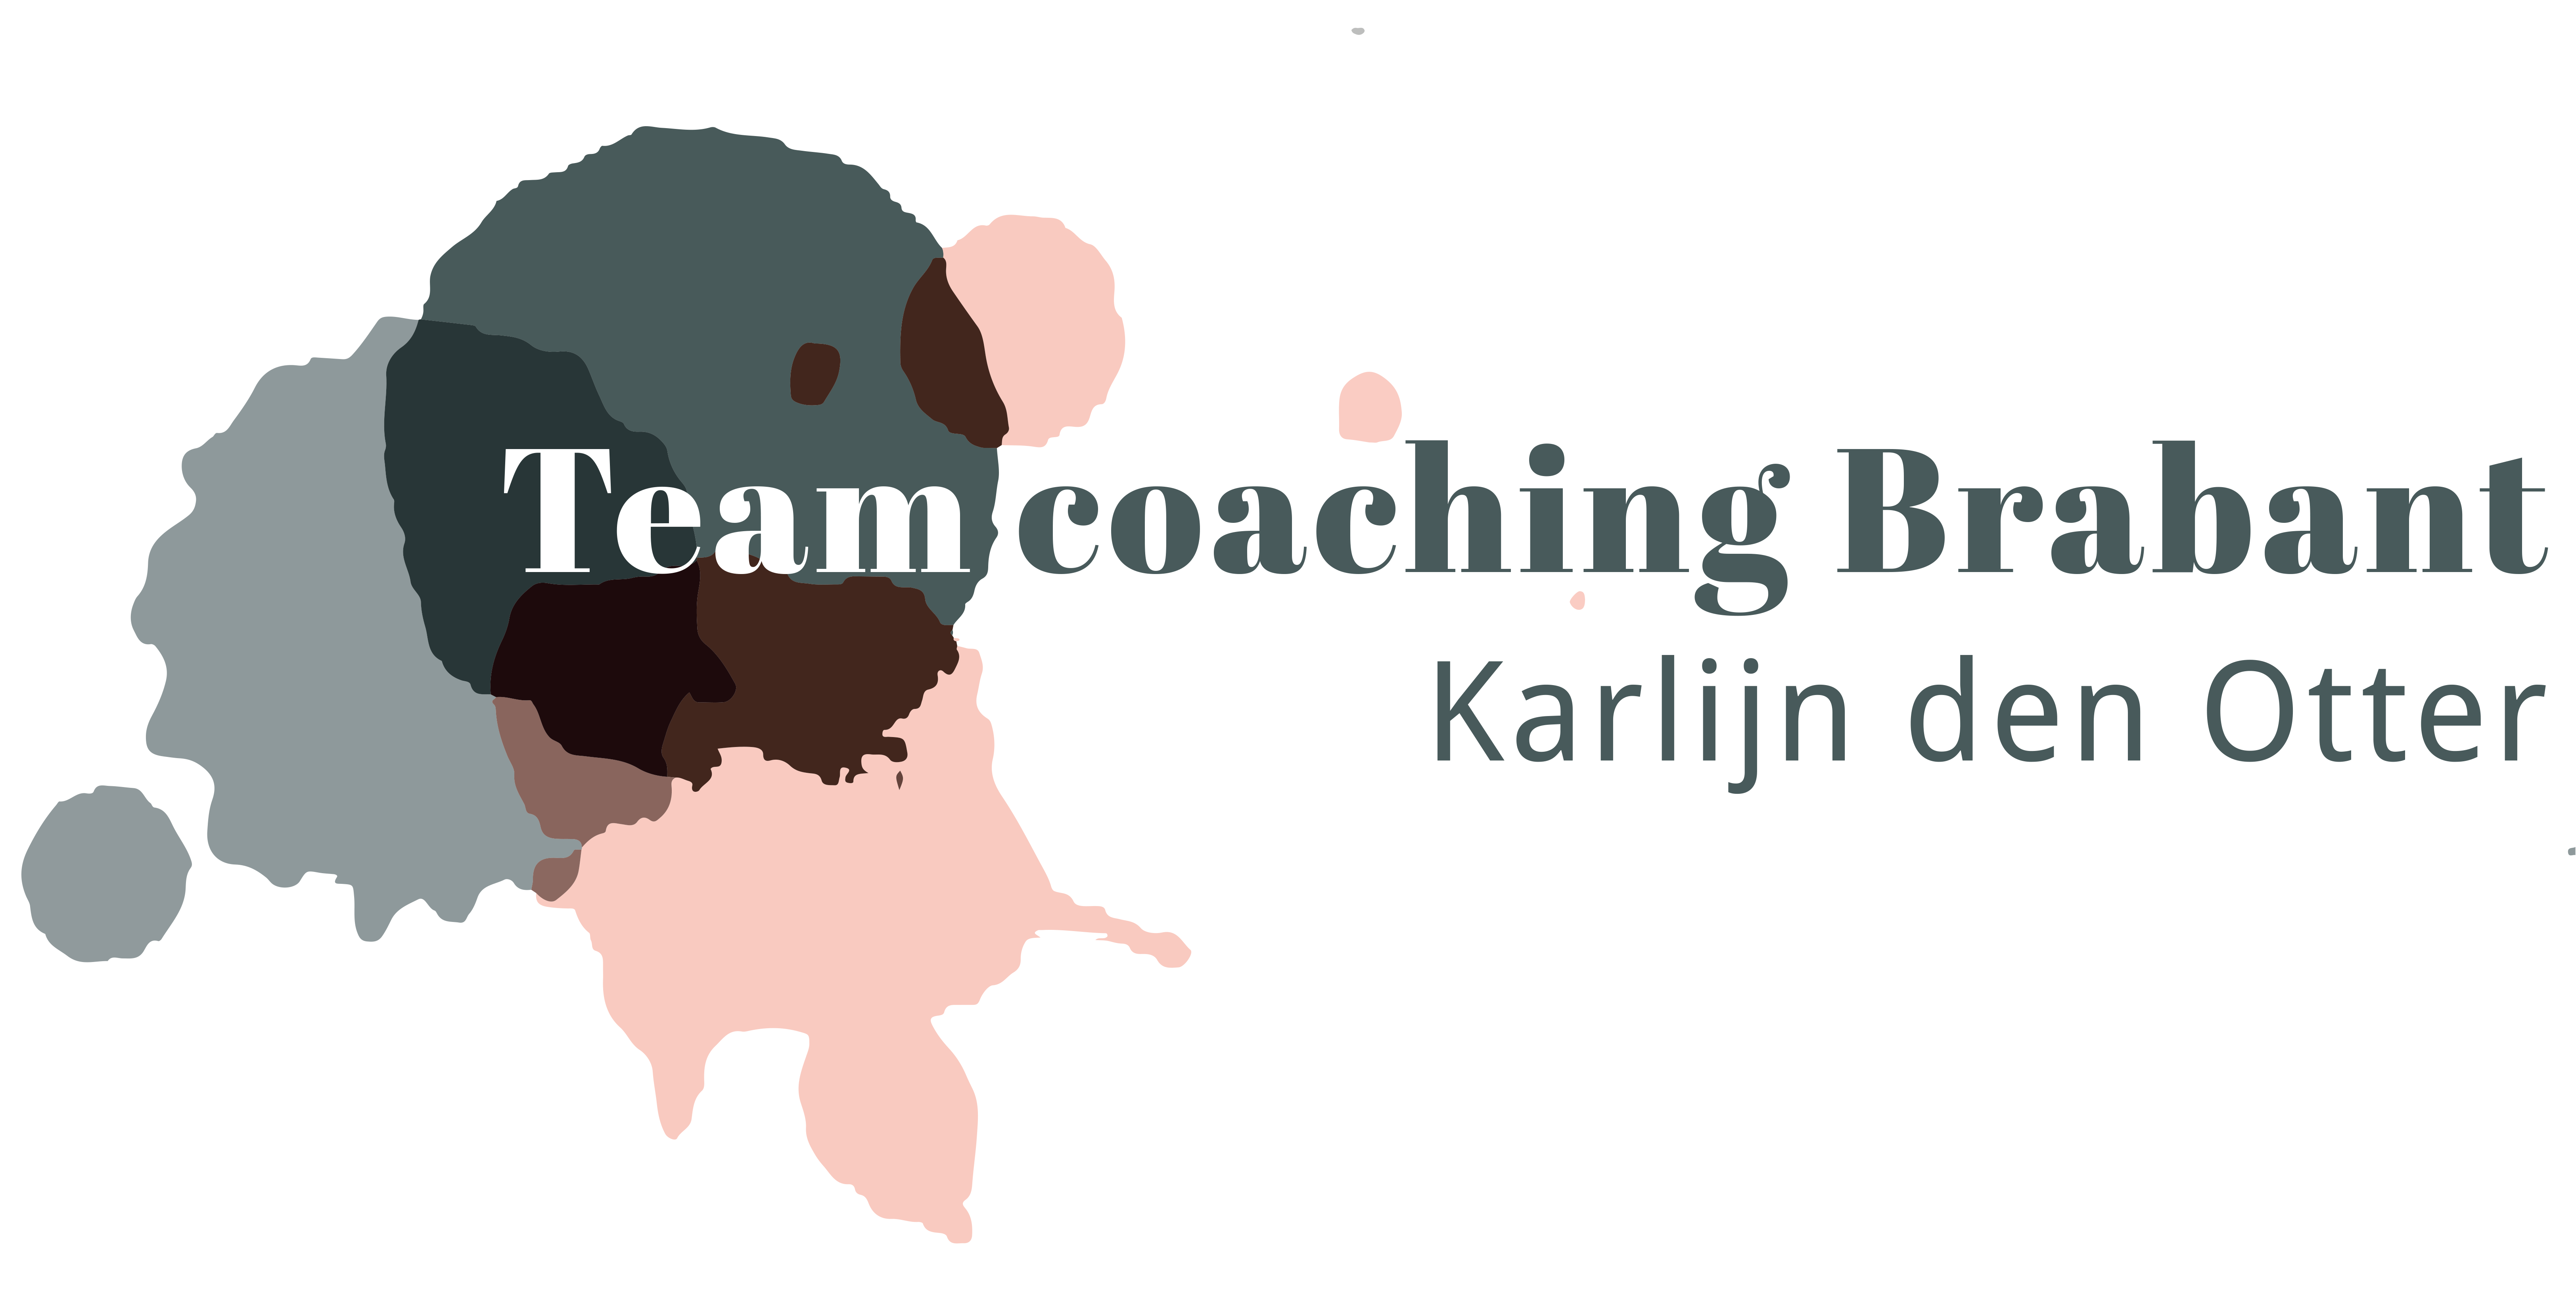 Teamcoaching Brabant